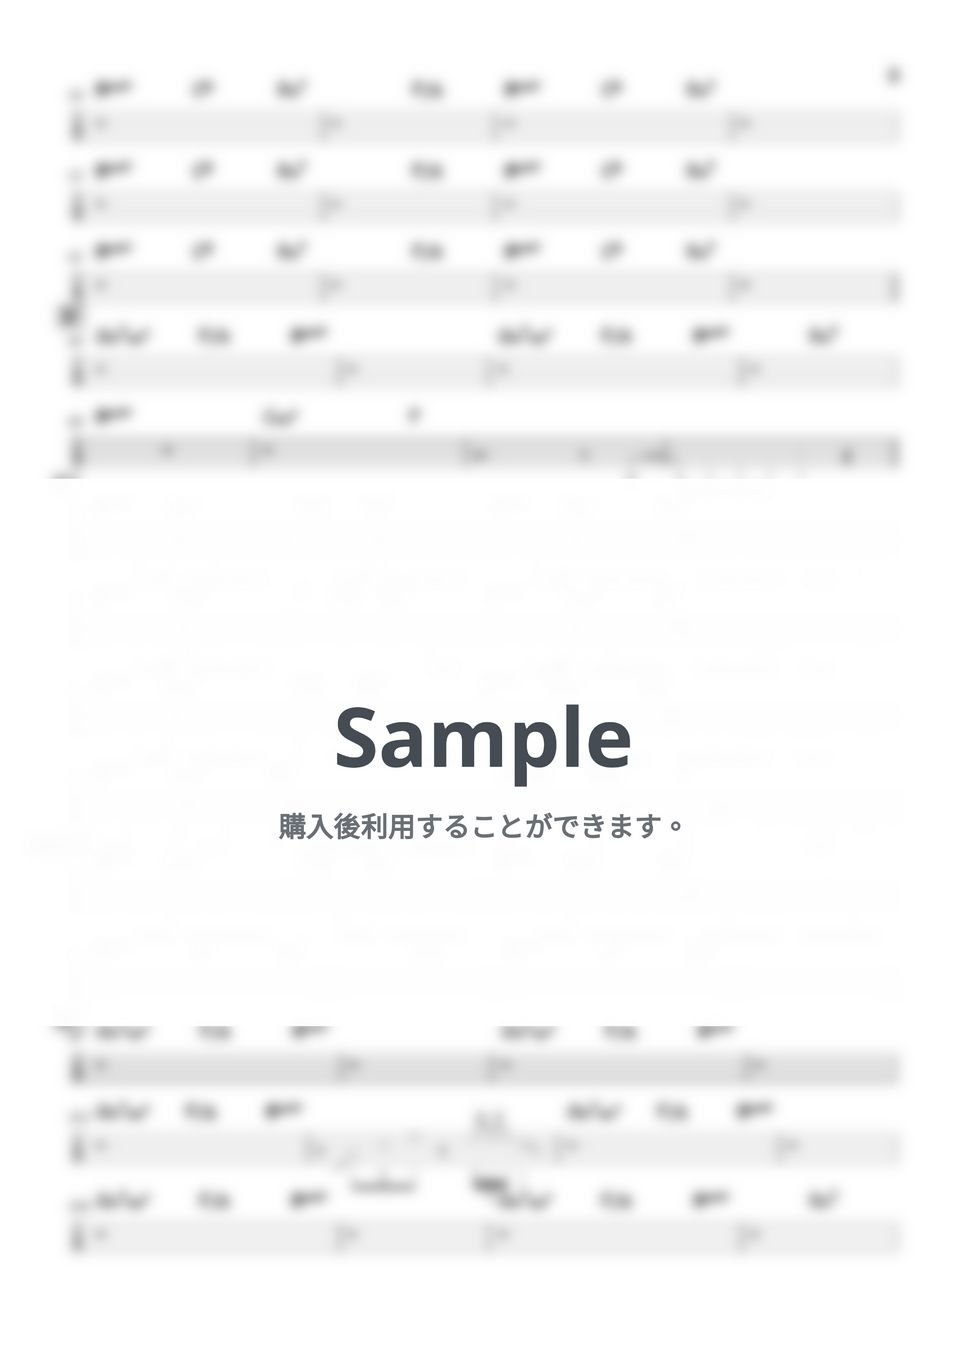 ヨルシカ - 春泥棒 (『ベースTAB譜』4弦ベース対応) by 箱譜屋